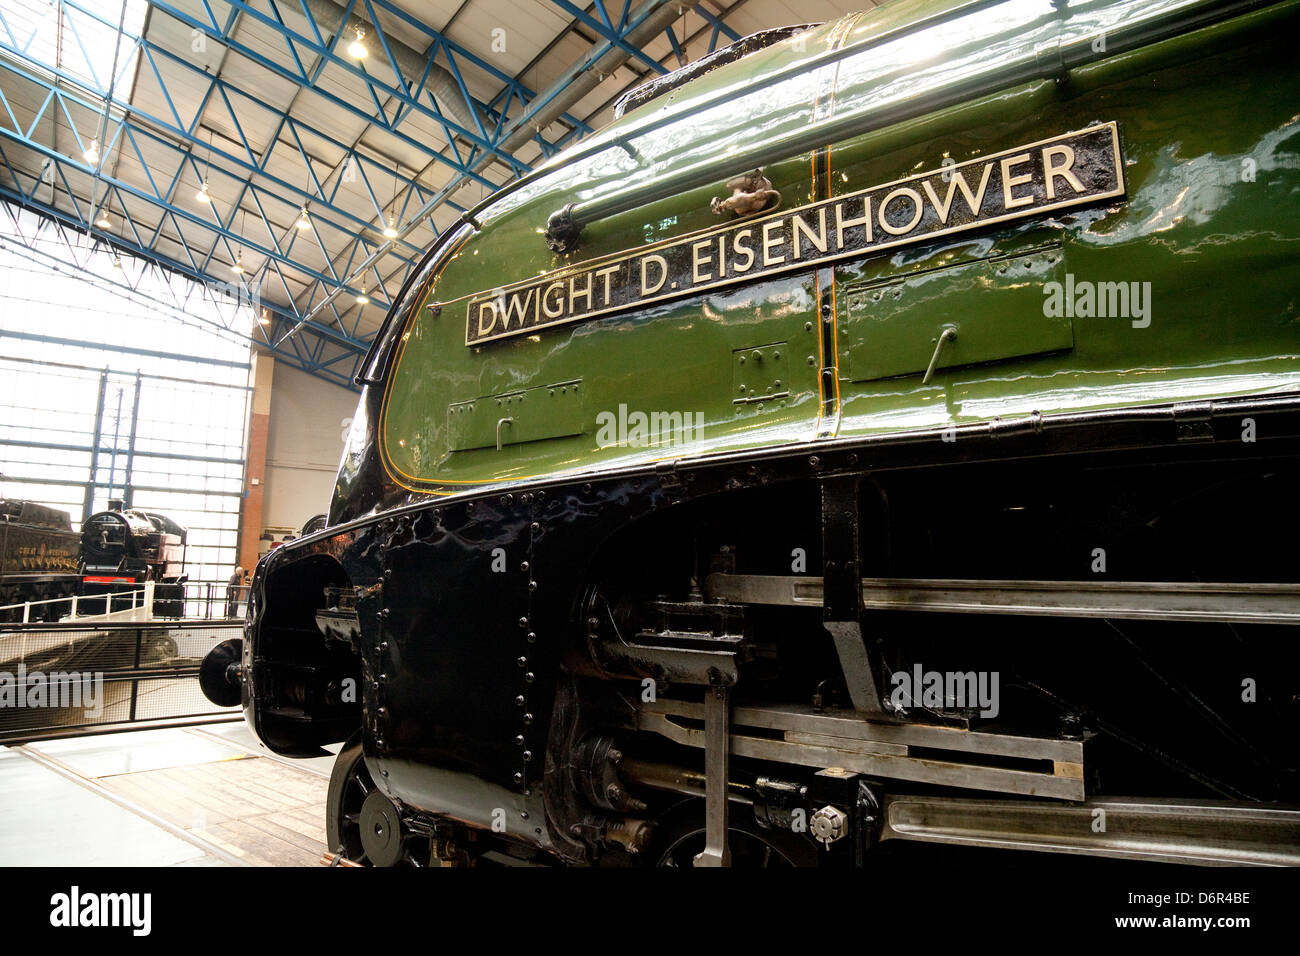 Dwight D Eisenhower A4 class locomotiva a vapore, presso il Museo nazionale delle ferrovie, York, Yorkshire Regno Unito Foto Stock